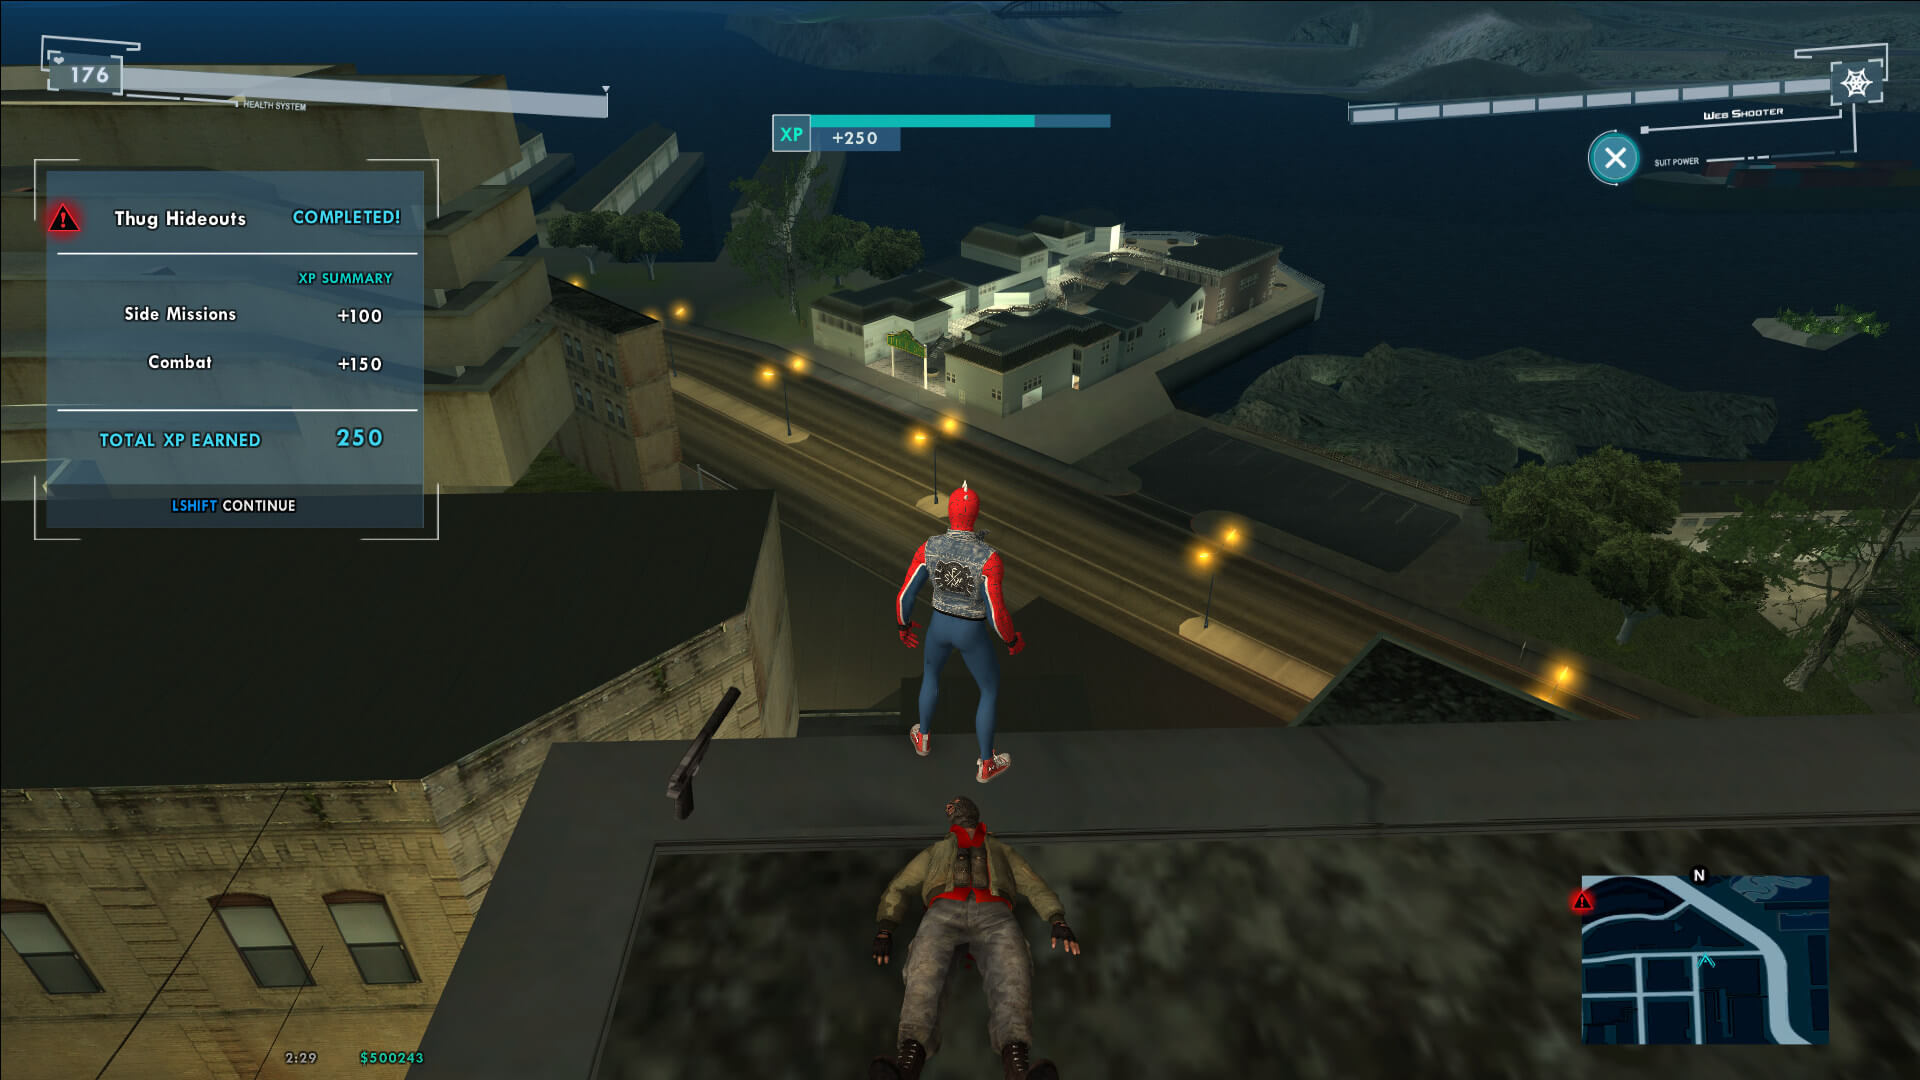 Spider-Man Mod GTA SA for Grand Theft Auto: San Andreas - ModDB